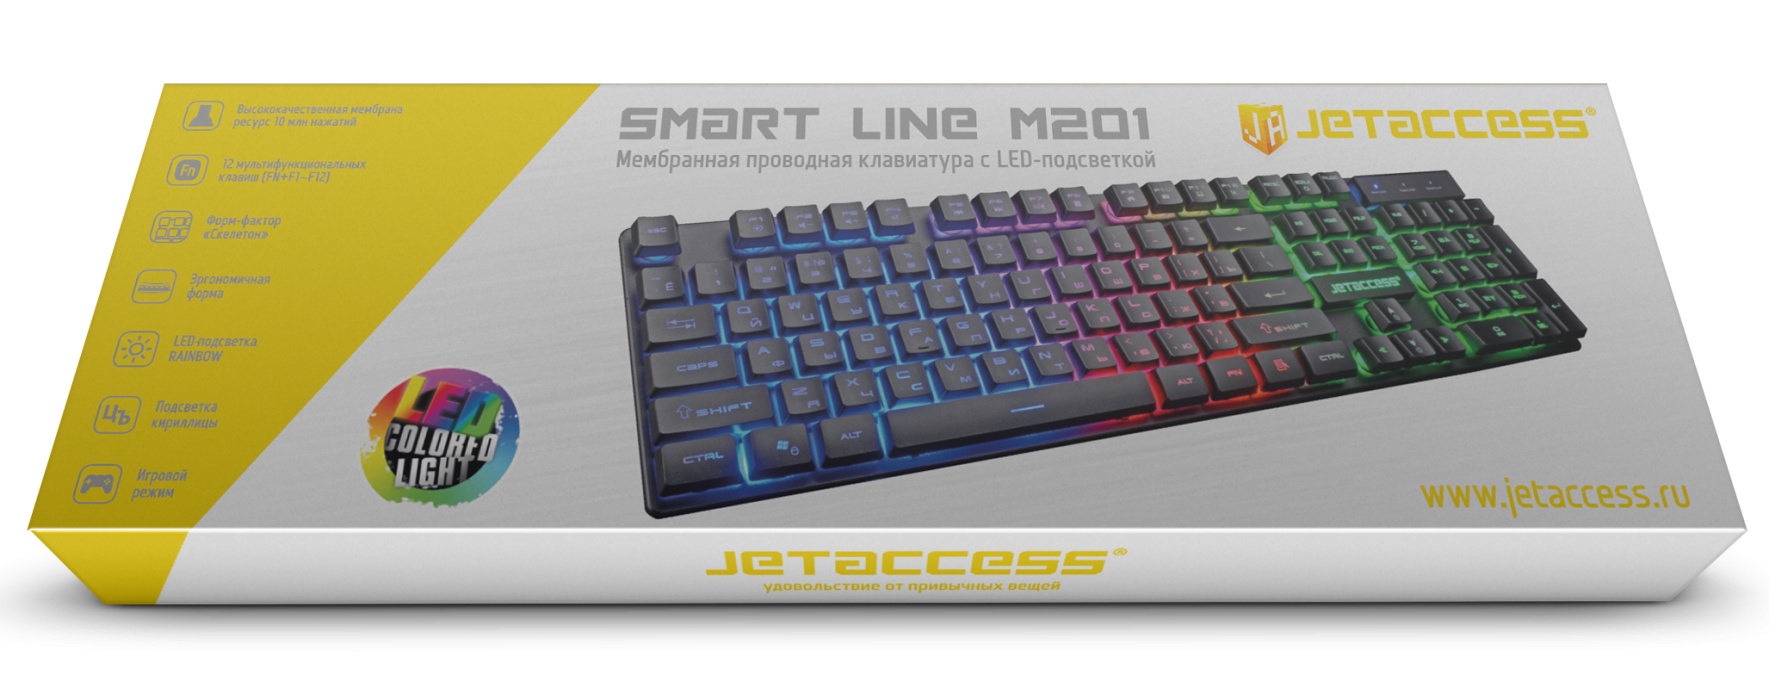 Мембранная проводная клавиатура SMART LINE M2013